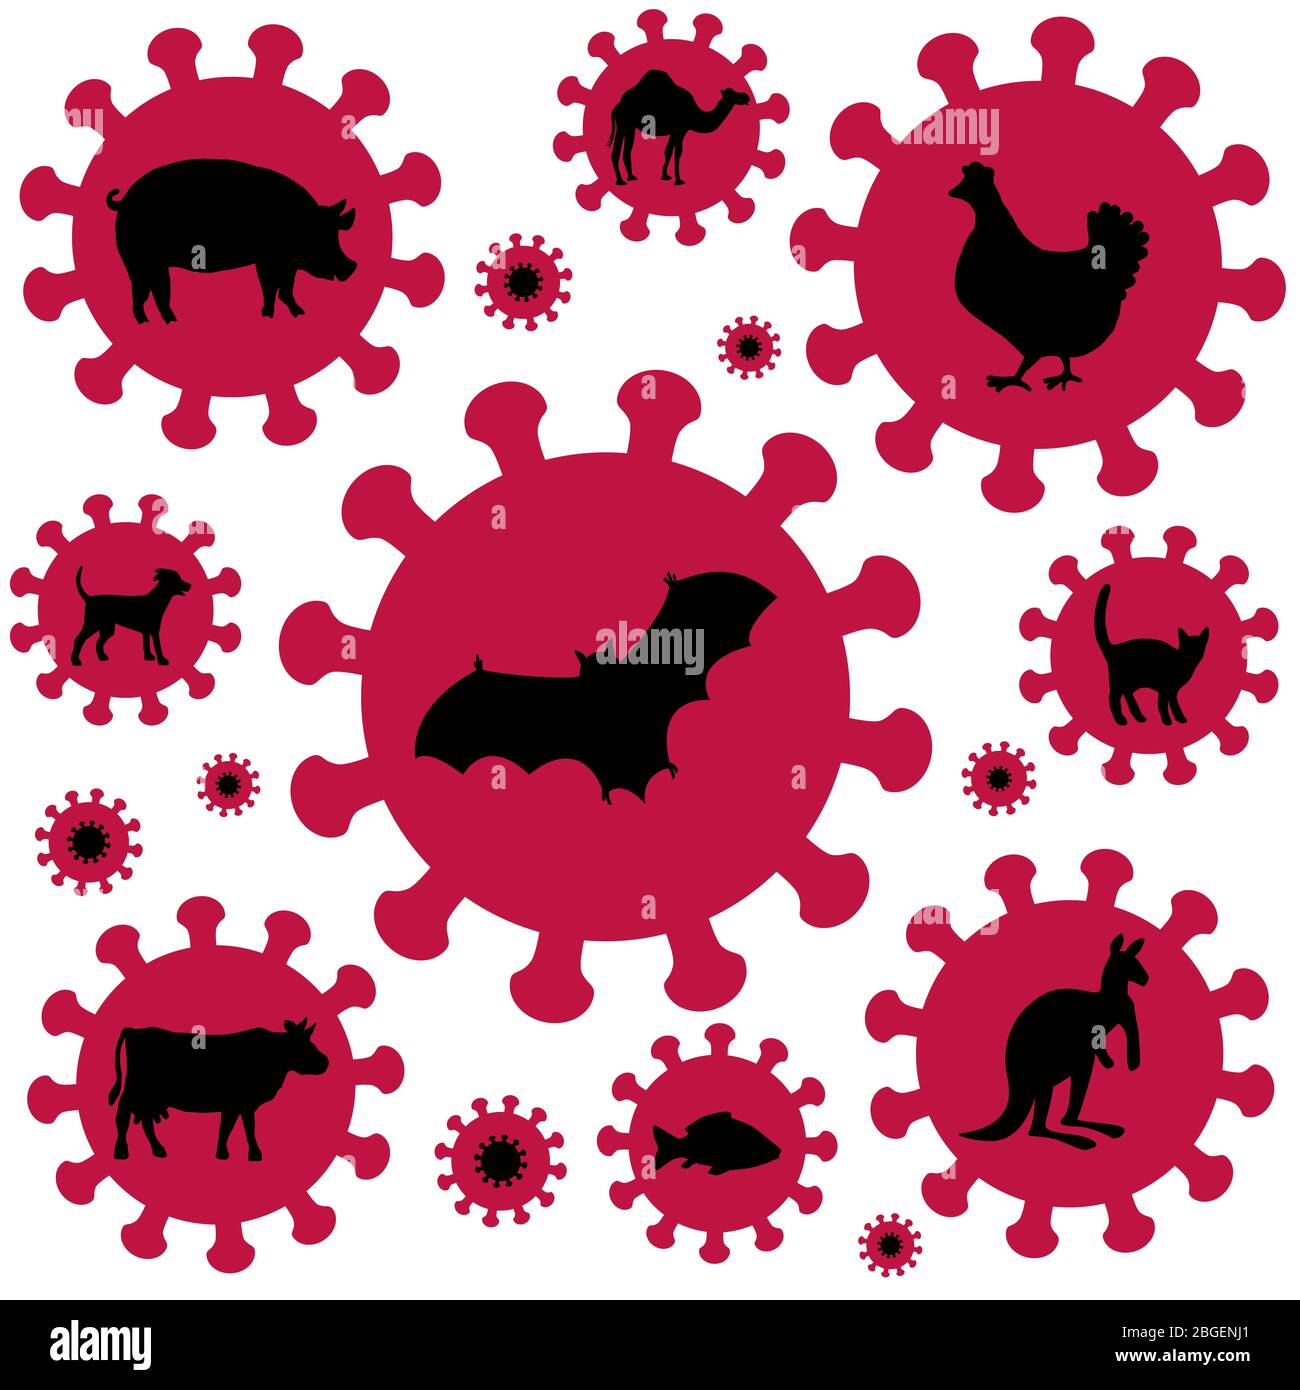 Coronavirus symbol. Pig bird bat flu and other animal influenzas. Comic icons, illustration on white background. Stock Photo